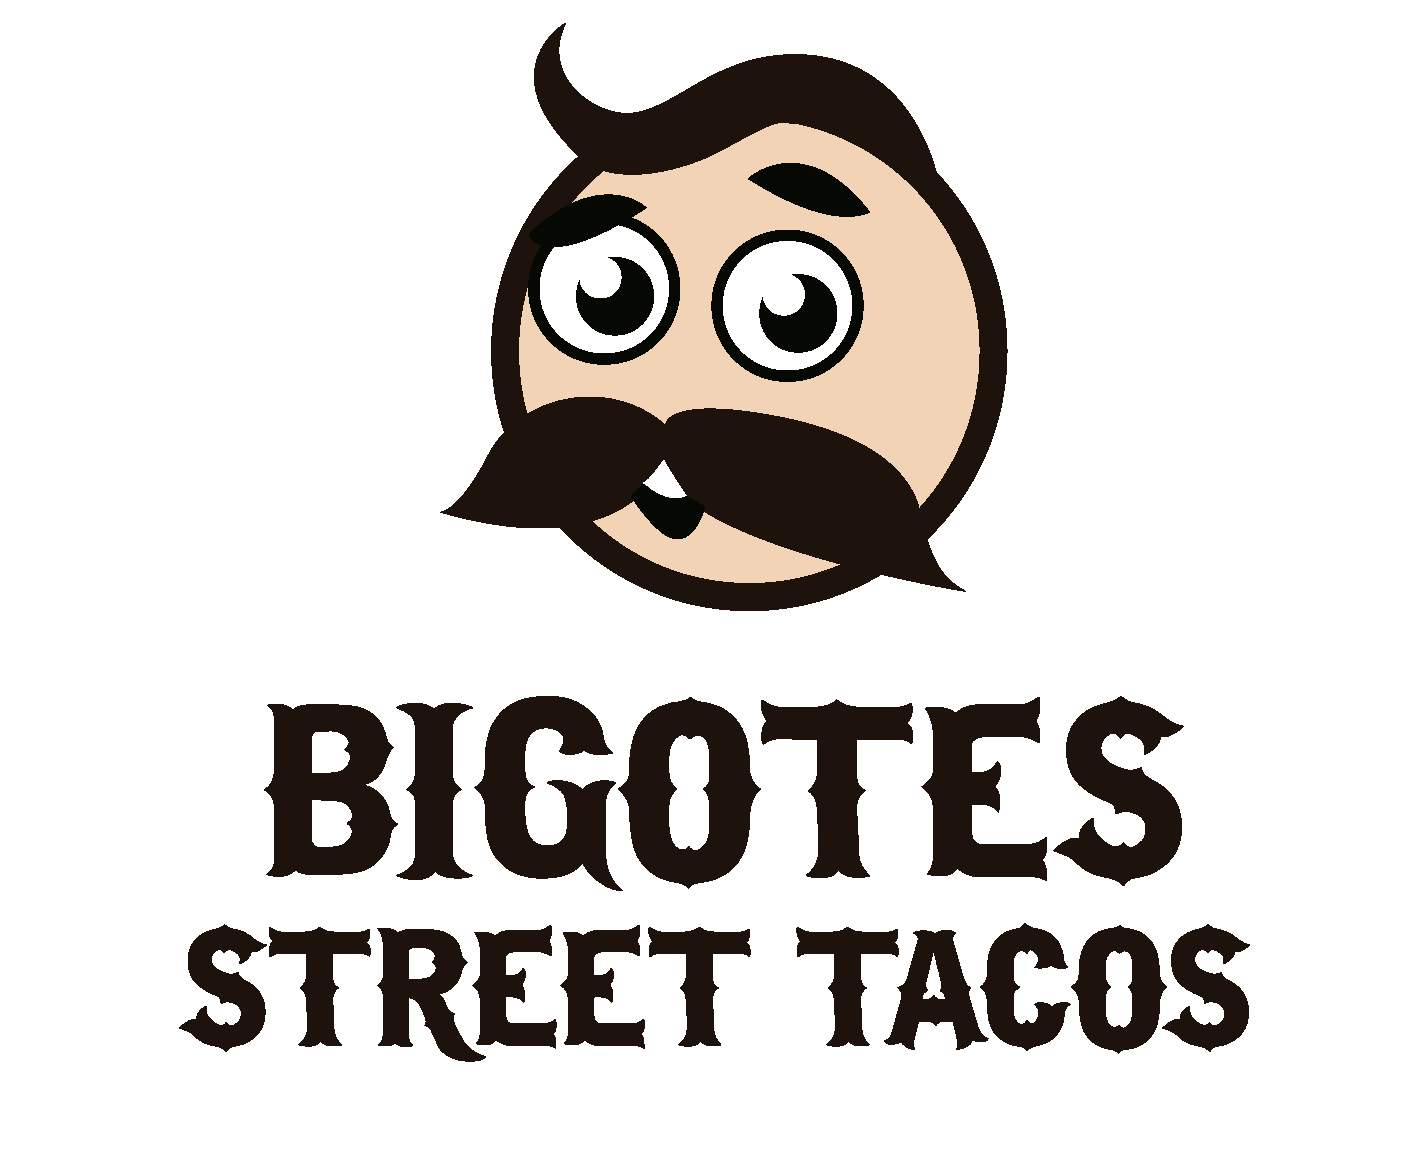 Bigotes Street Tacos